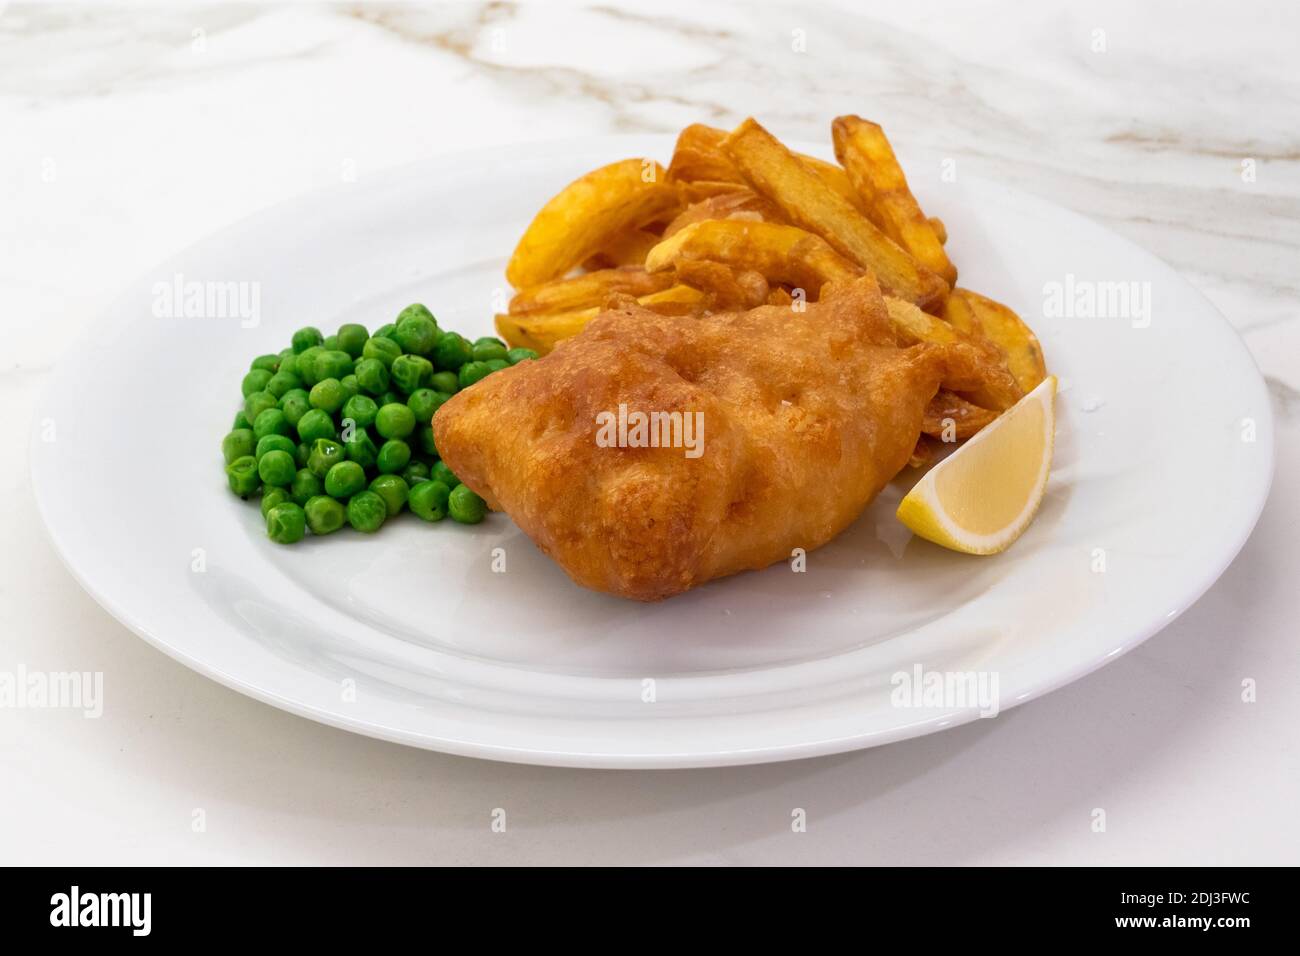 Fish and Chips with Peas and Lemon On a White plate, un plat traditionnel typique de cuisine britannique avec de la morue friture Banque D'Images